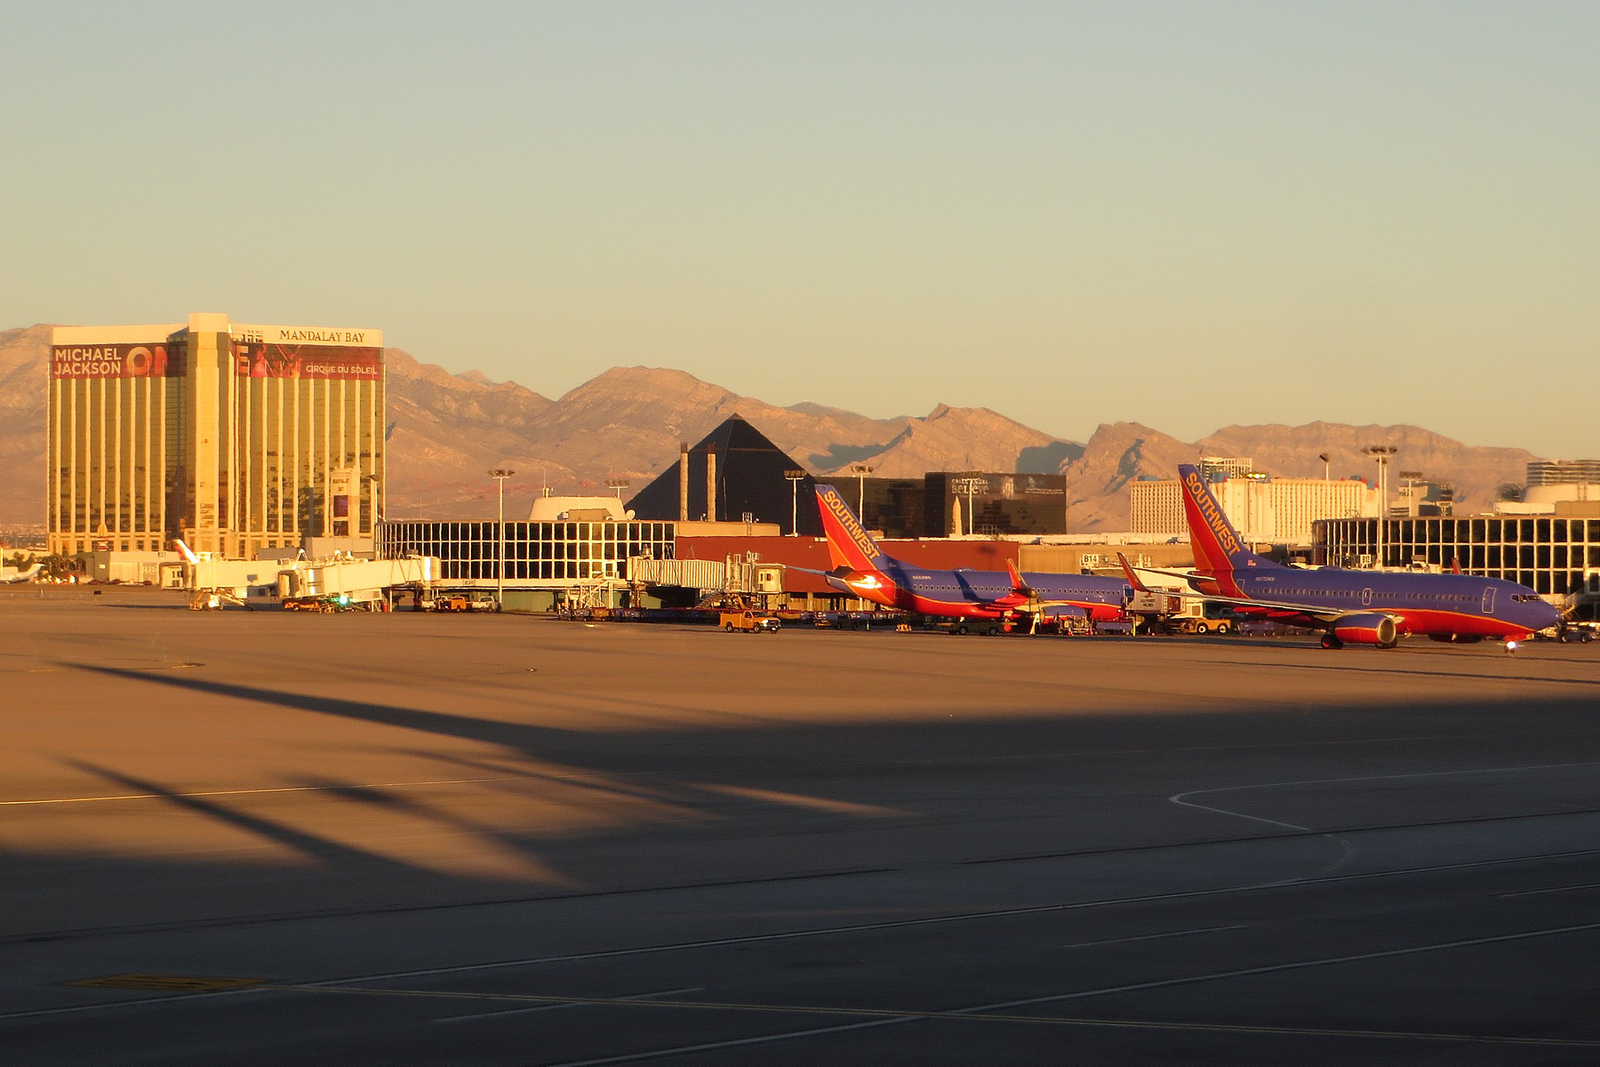 El aeropuerto de Las Vegas está situado muy cerca del Strip, por lo que los principales hoteles son visibles desde el aeródromo. Foto: Ken Lund